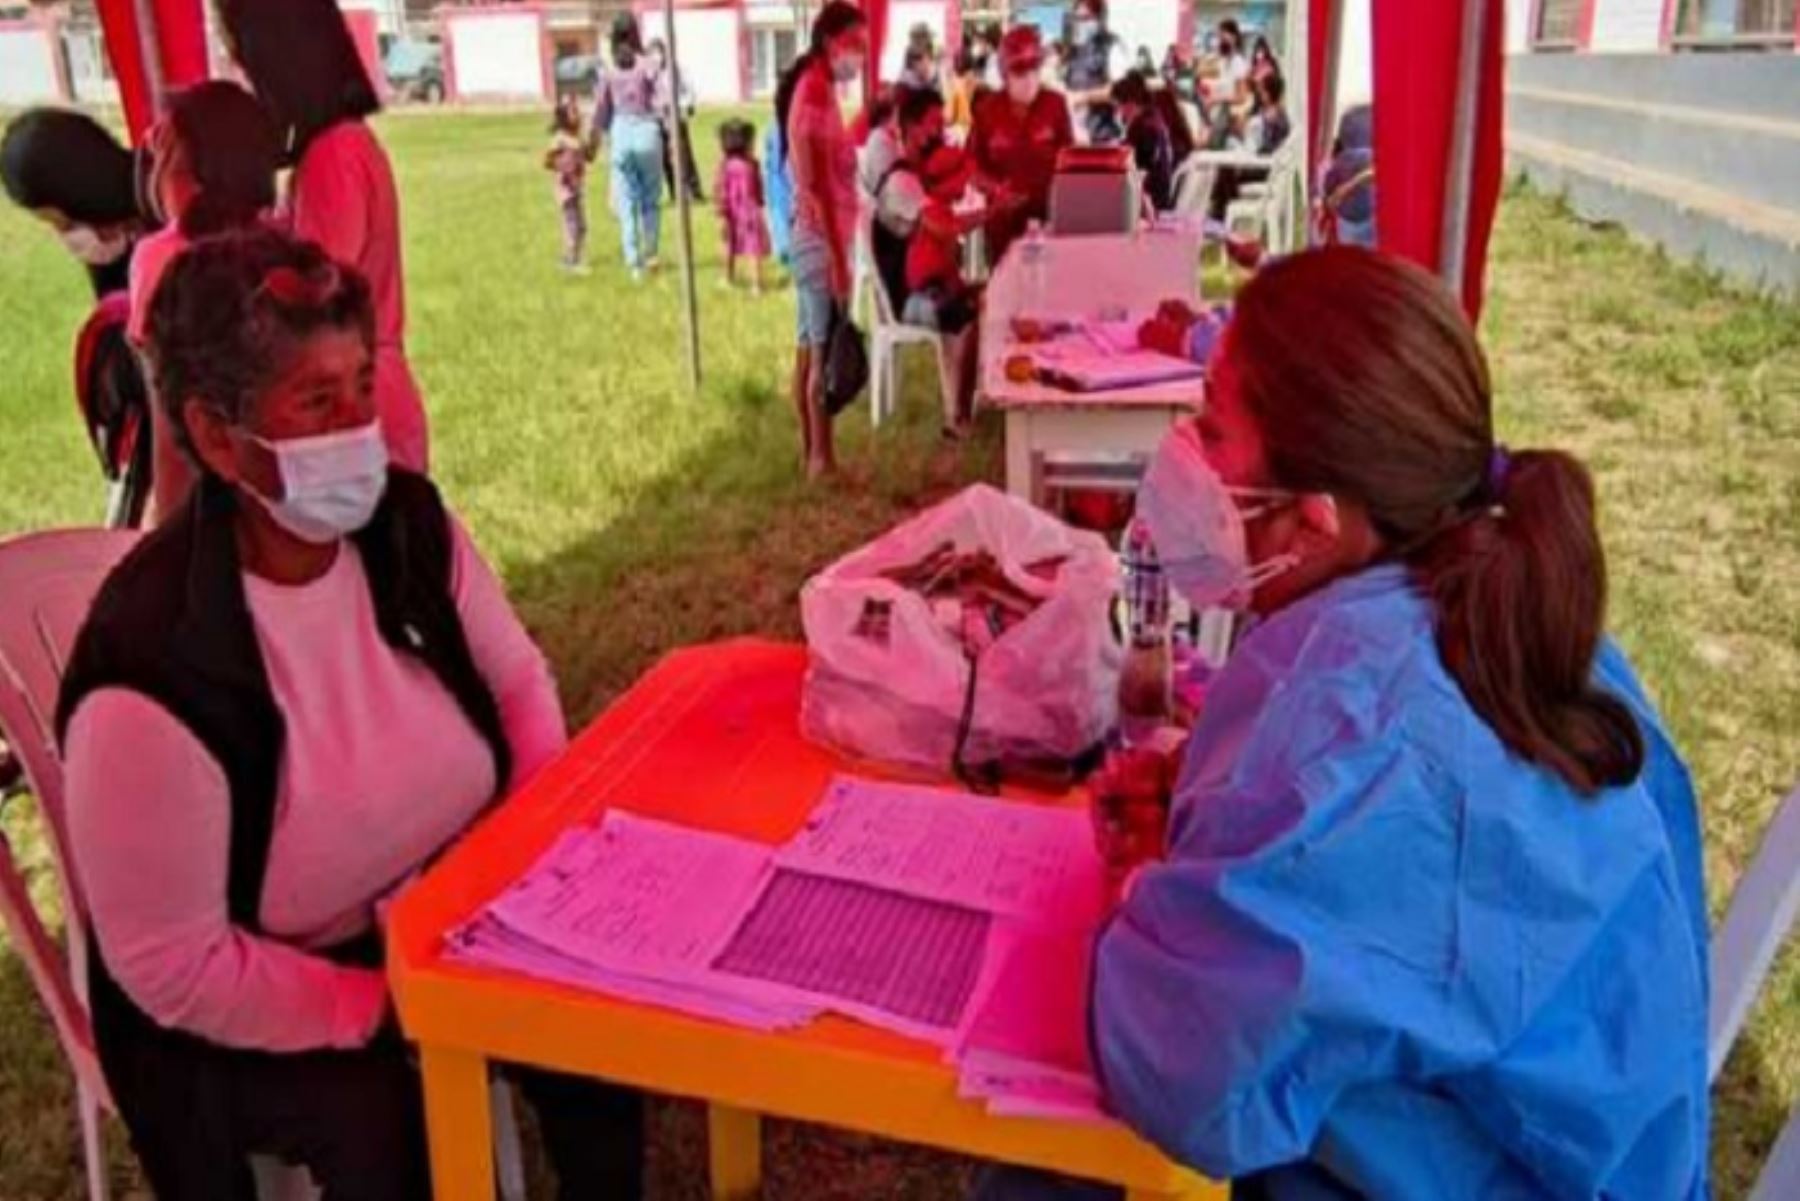 La campaña también se llevó a cabo como parte del inicio de la Semana de la vacunación en las Américas, donde se permite proteger a la población a través del esquema regular de vacunación y contra el covid-19.